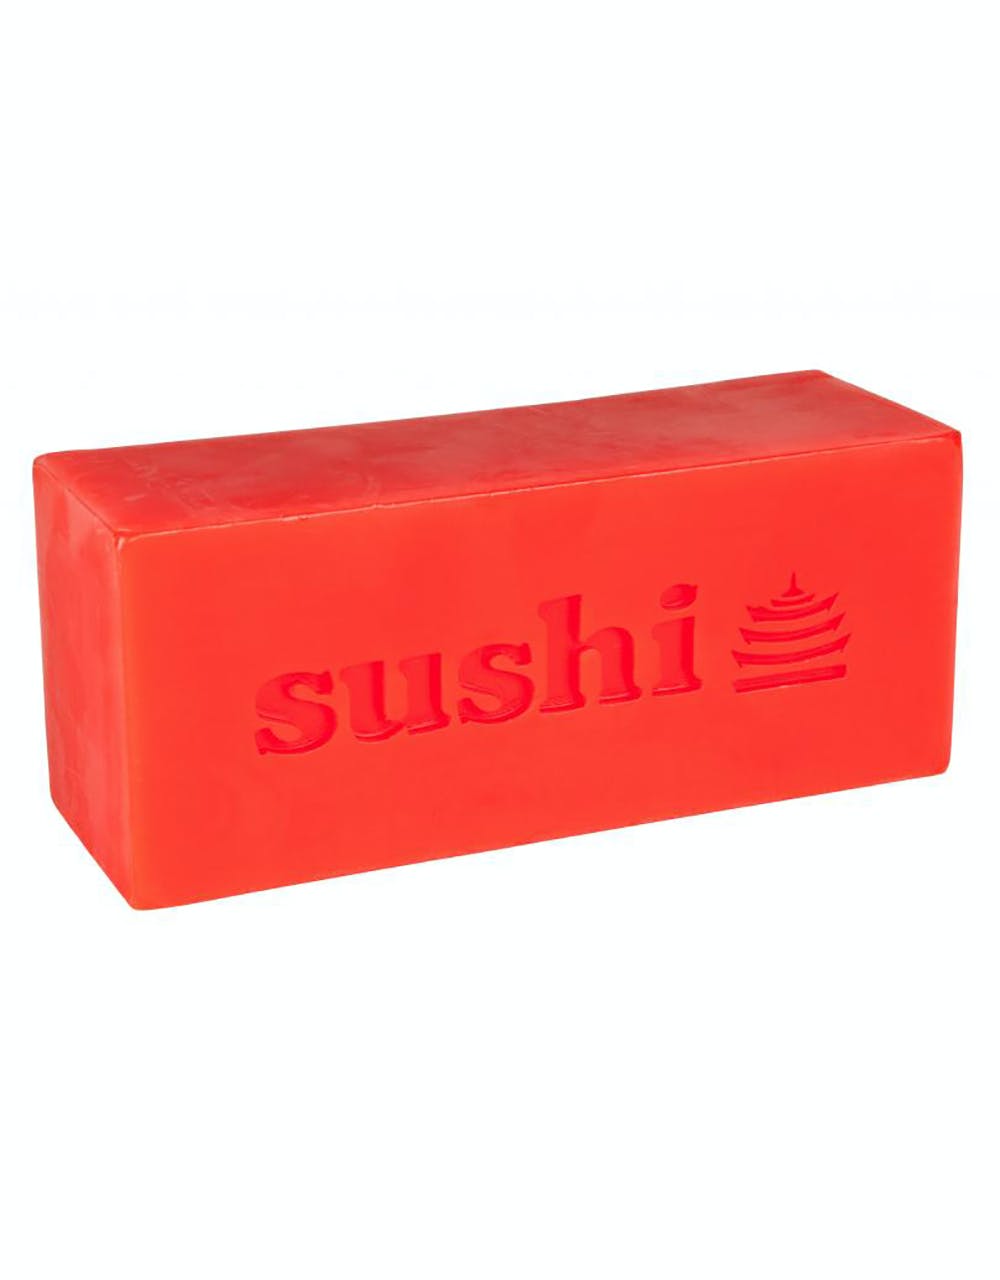 Sushi Pagoda Wax